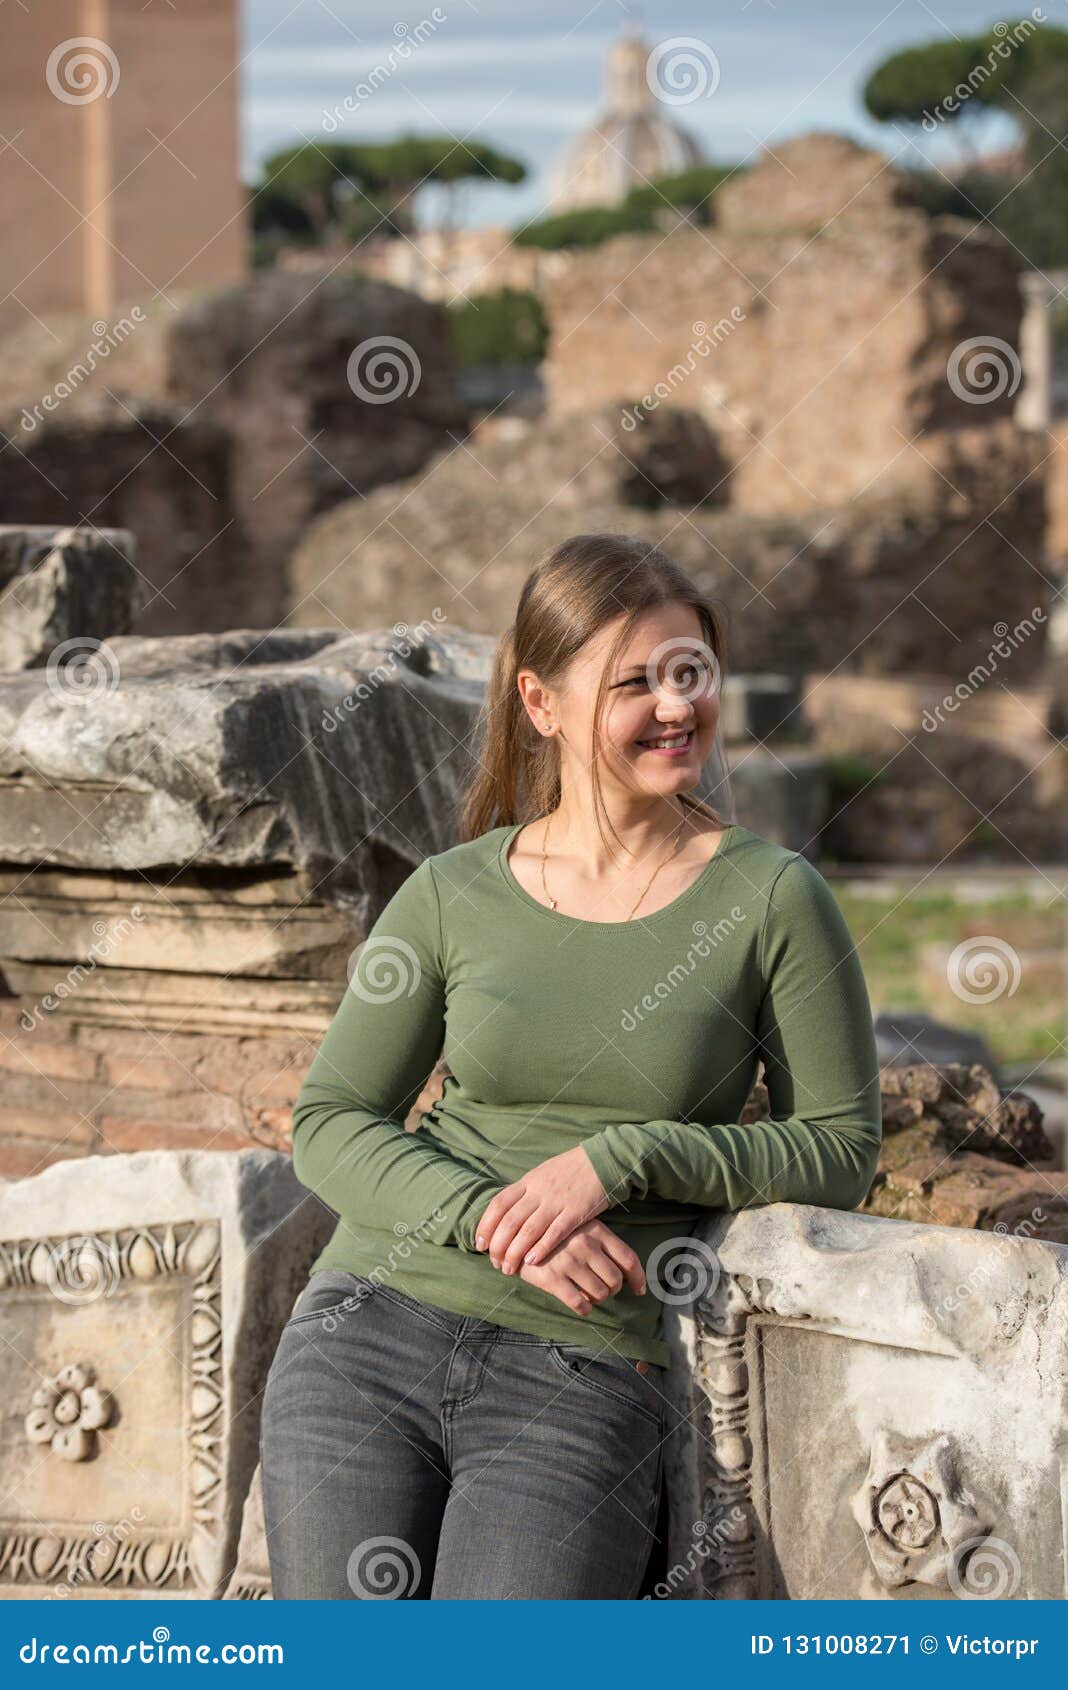 woman in foro romano